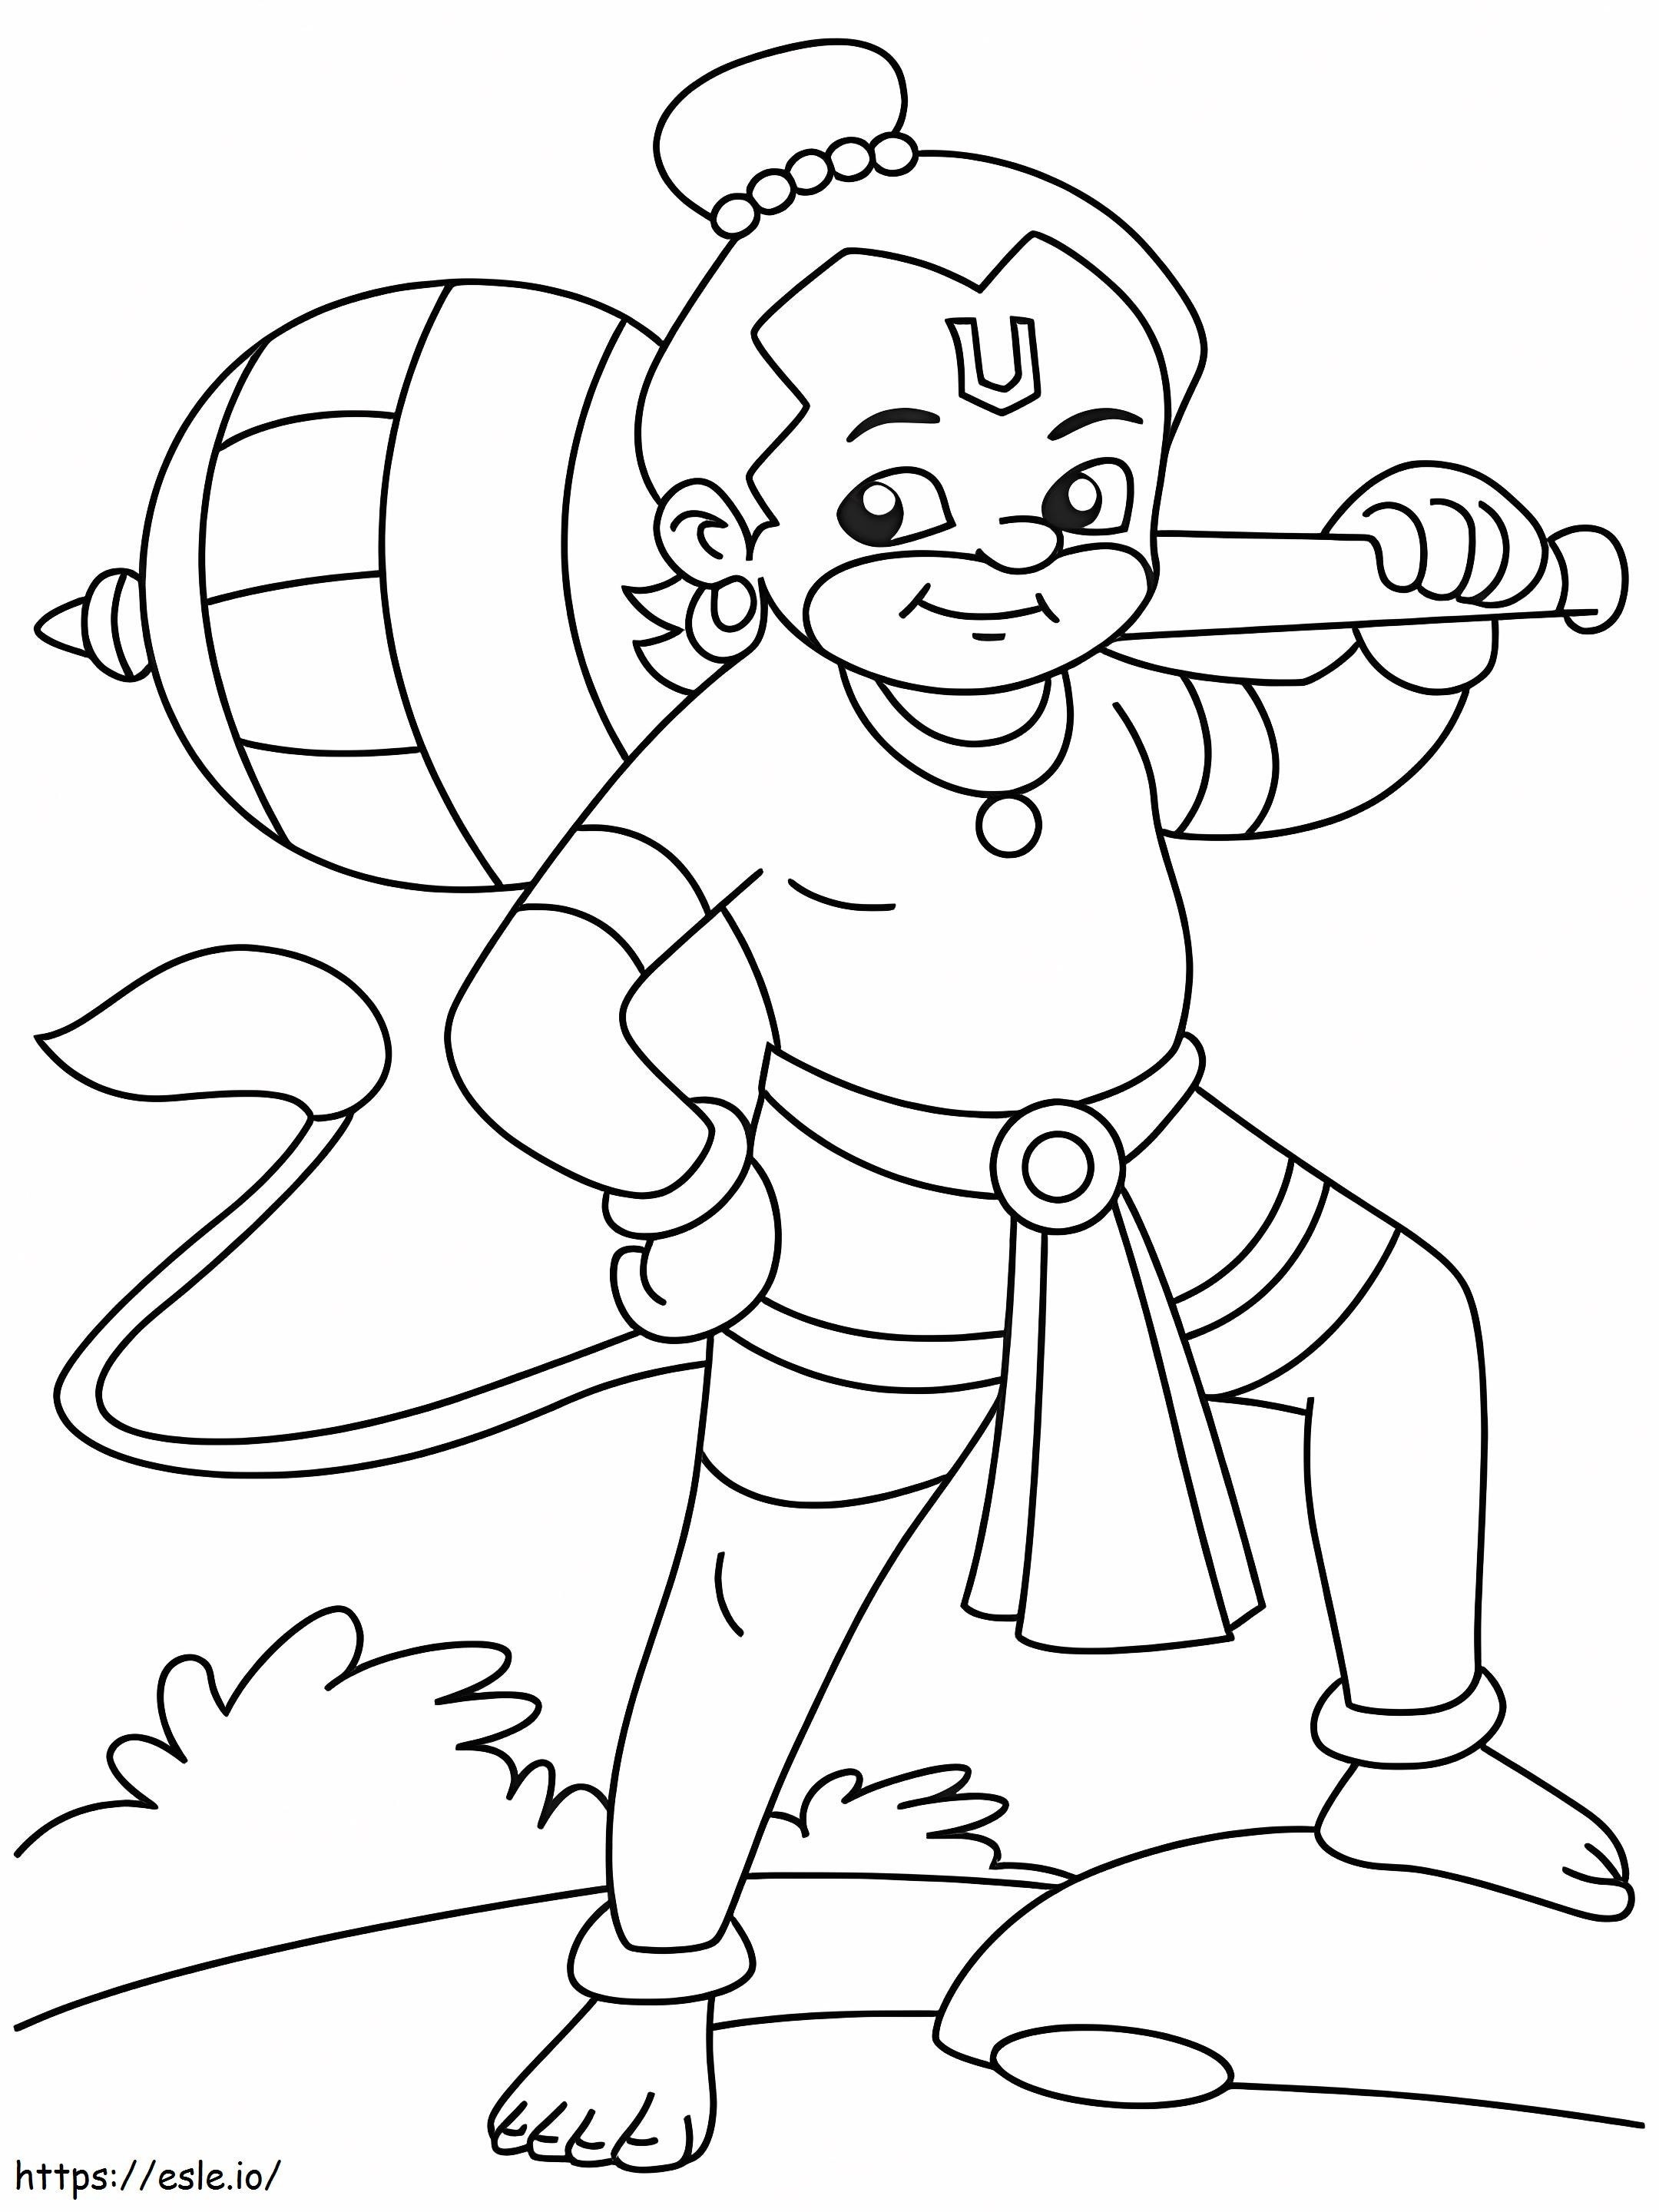 Hanuman 1 coloring page